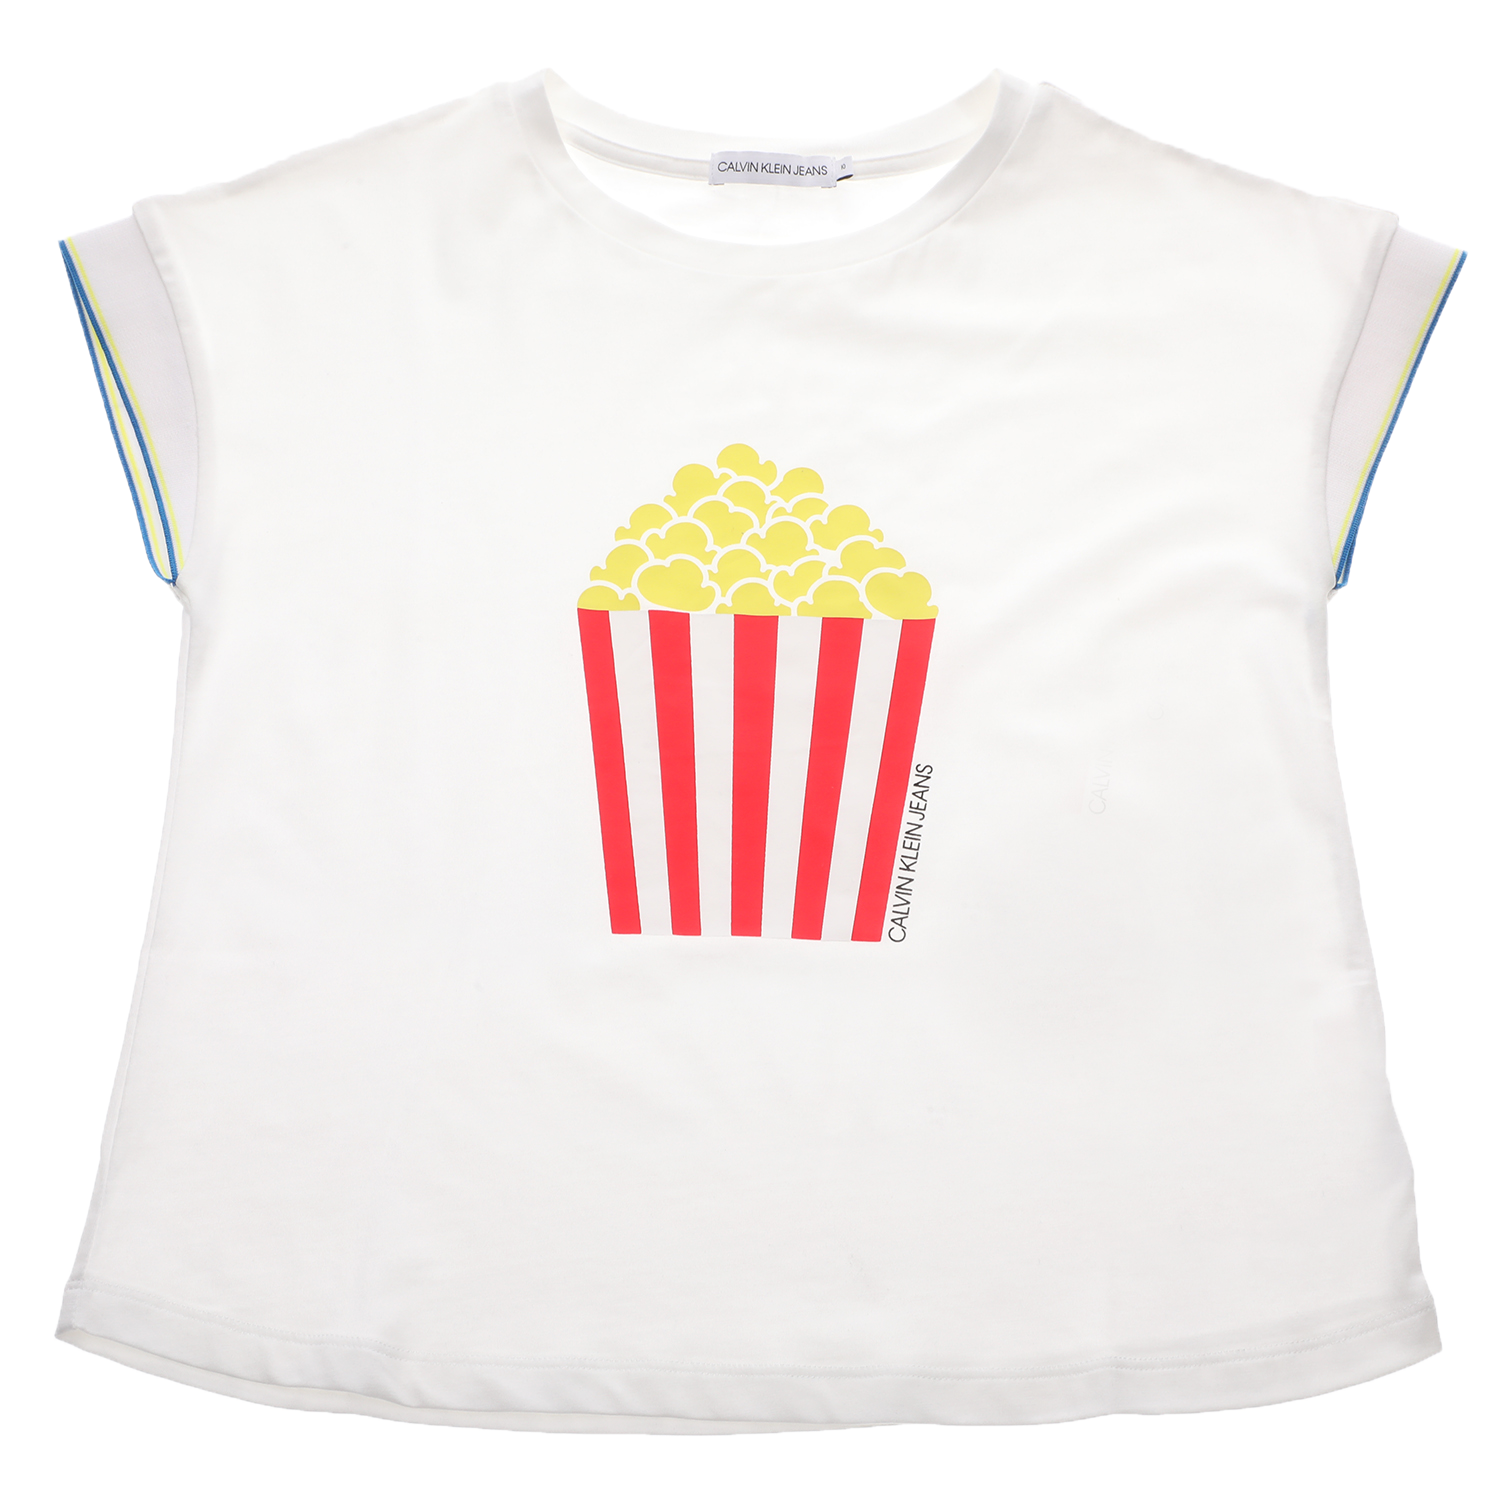 Παιδικά/Girls/Ρούχα/Μπλούζες Κοντομάνικες-Αμάνικες CALVIN KLEIN JEANS KIDS - Παιδική μπλούζα CALVIN KLEIN JEANS FLOWY FUN ICON λευκό κόκκινο